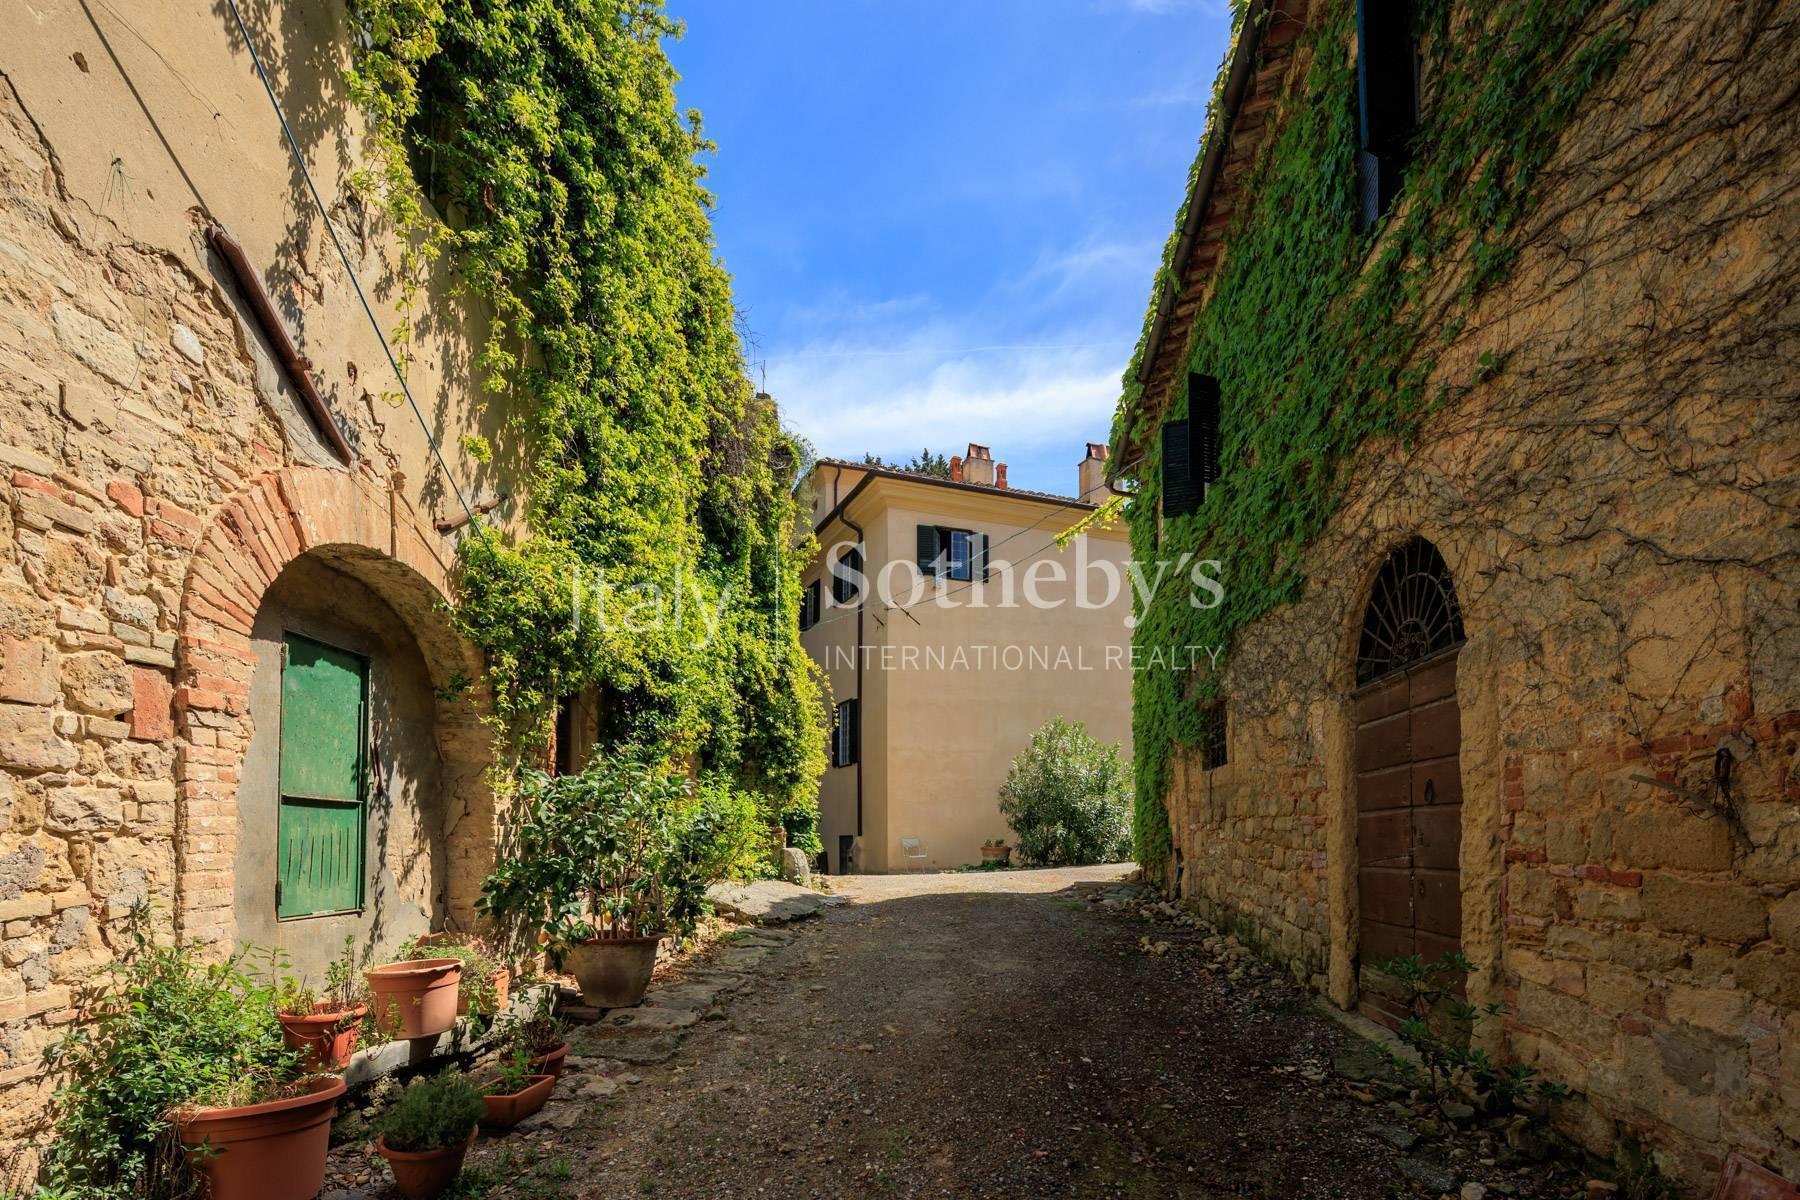 Meravigliosa villa nella campagna Toscana a due passi dalla Maremma - 29